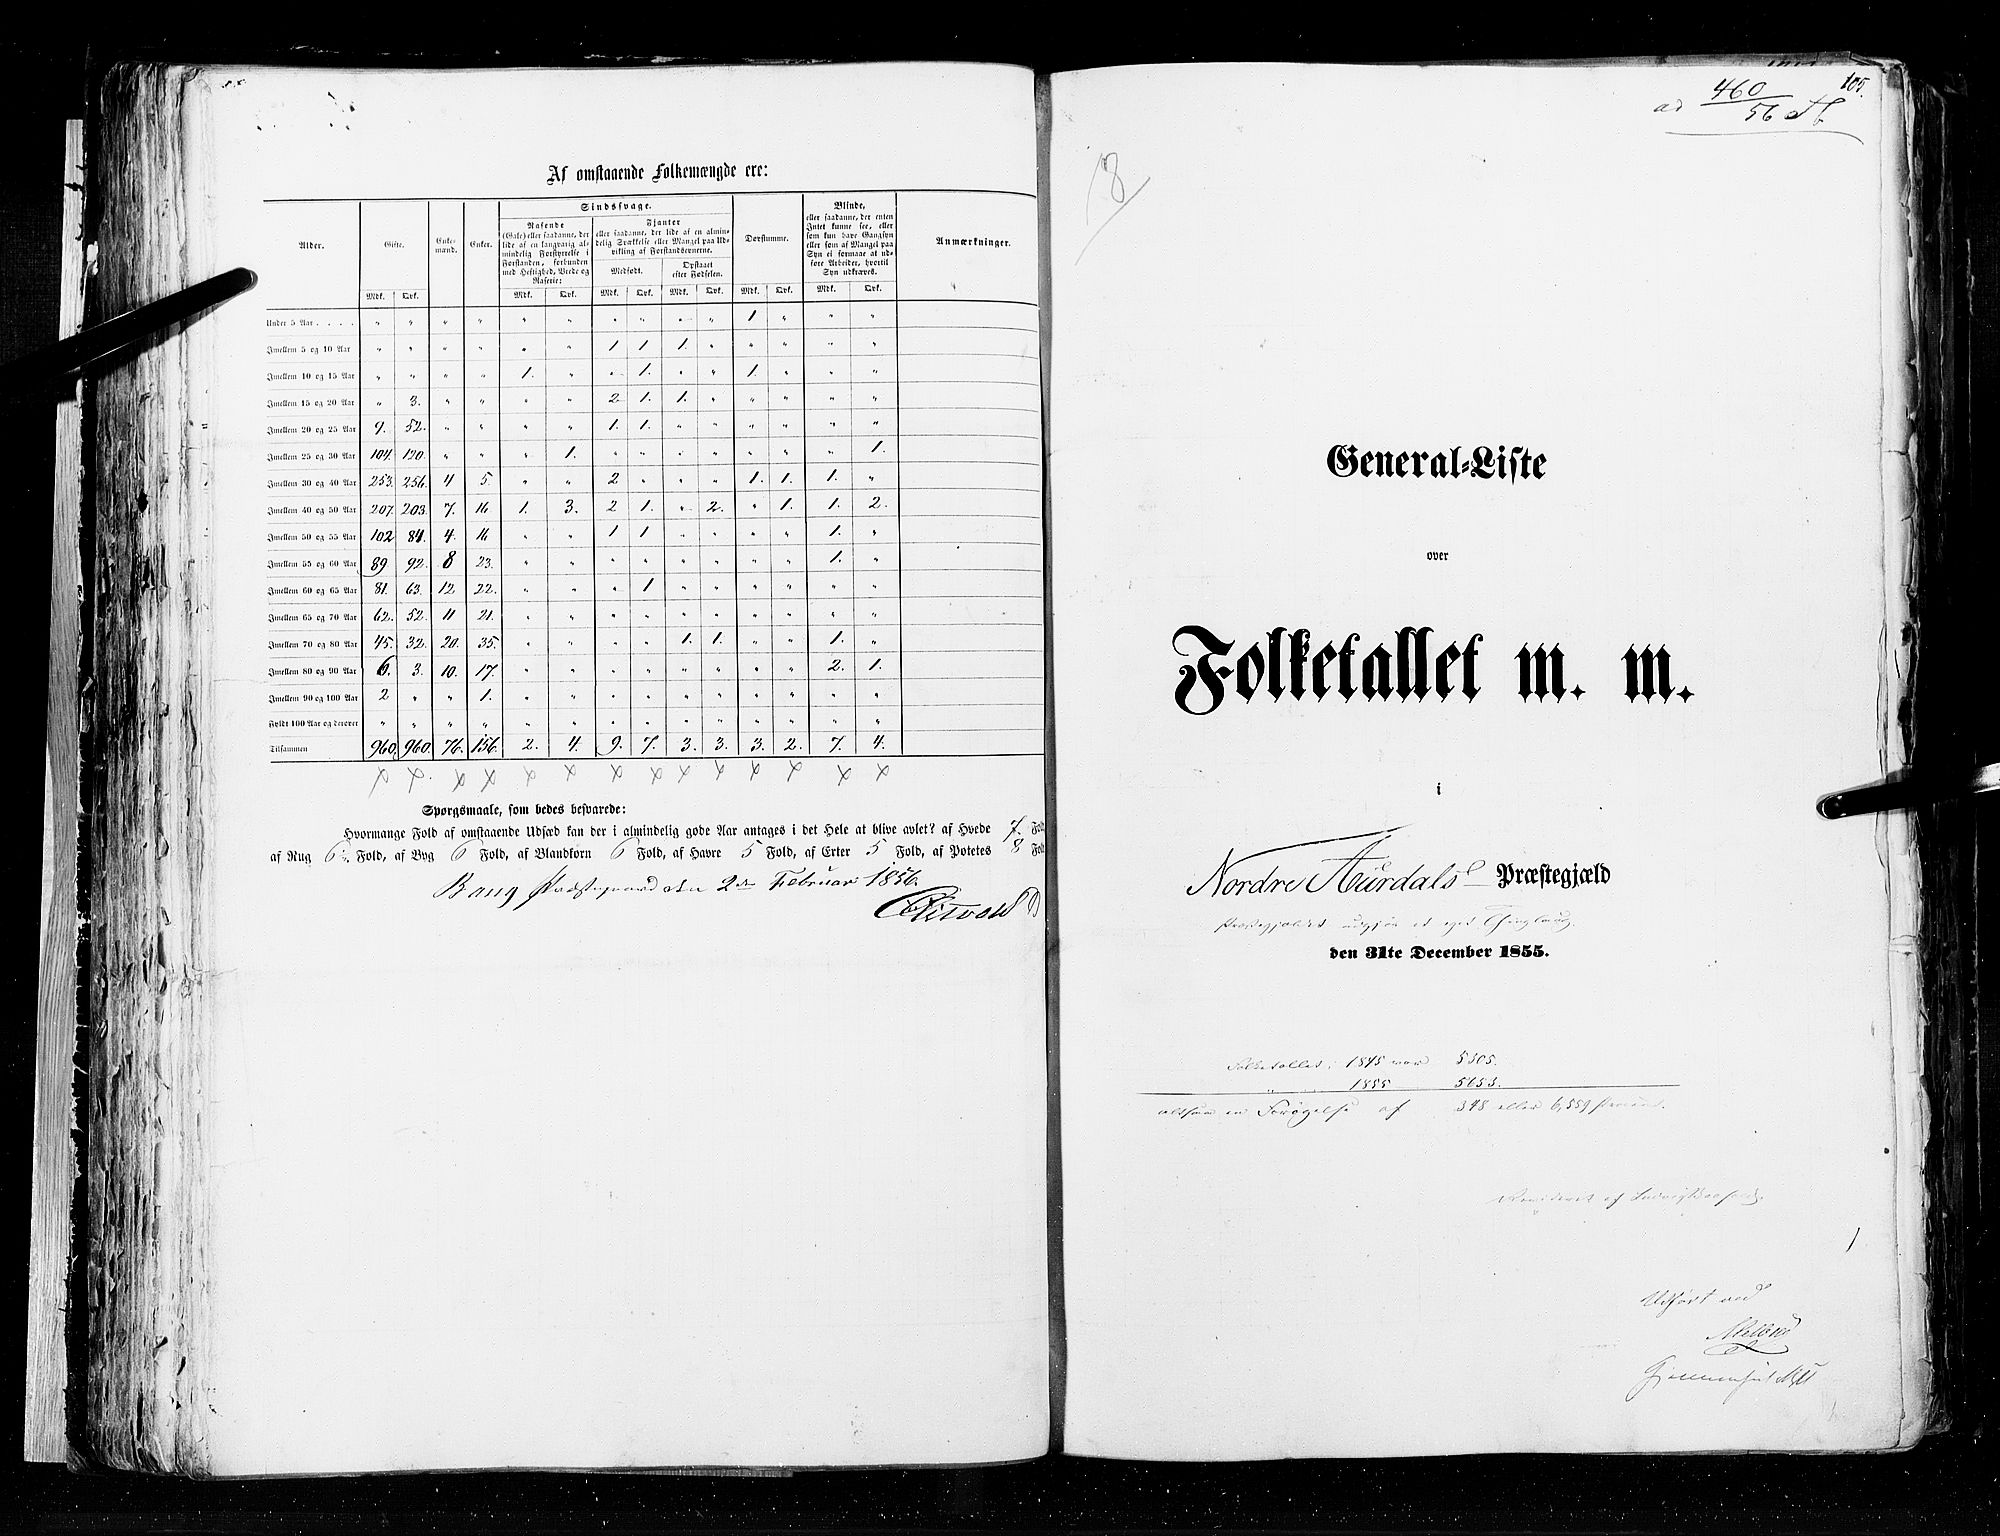 RA, Folketellingen 1855, bind 2: Kristians amt, Buskerud amt og Jarlsberg og Larvik amt, 1855, s. 105